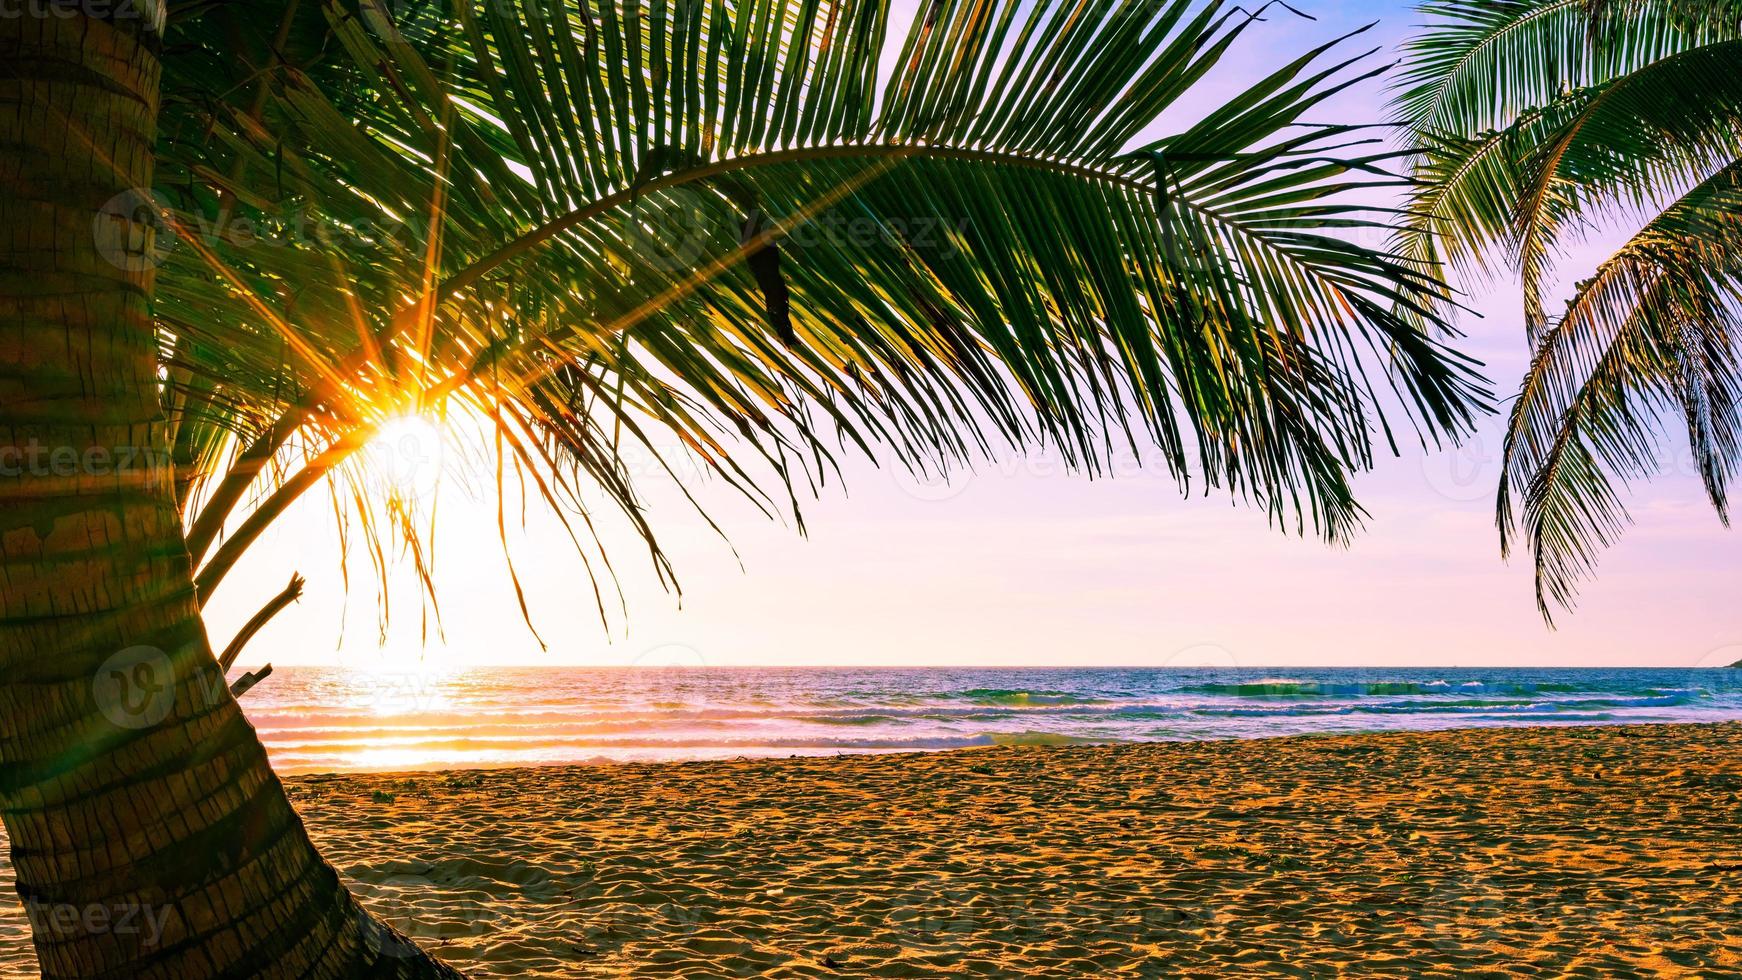 Strand Herbstferien Konzept Hintergrund Naturrahmen mit Kokospalmen am Strand mit Sonnenlicht Flare schöner Sonnenuntergang oder Sonnenaufgang Landschaftshintergrund foto